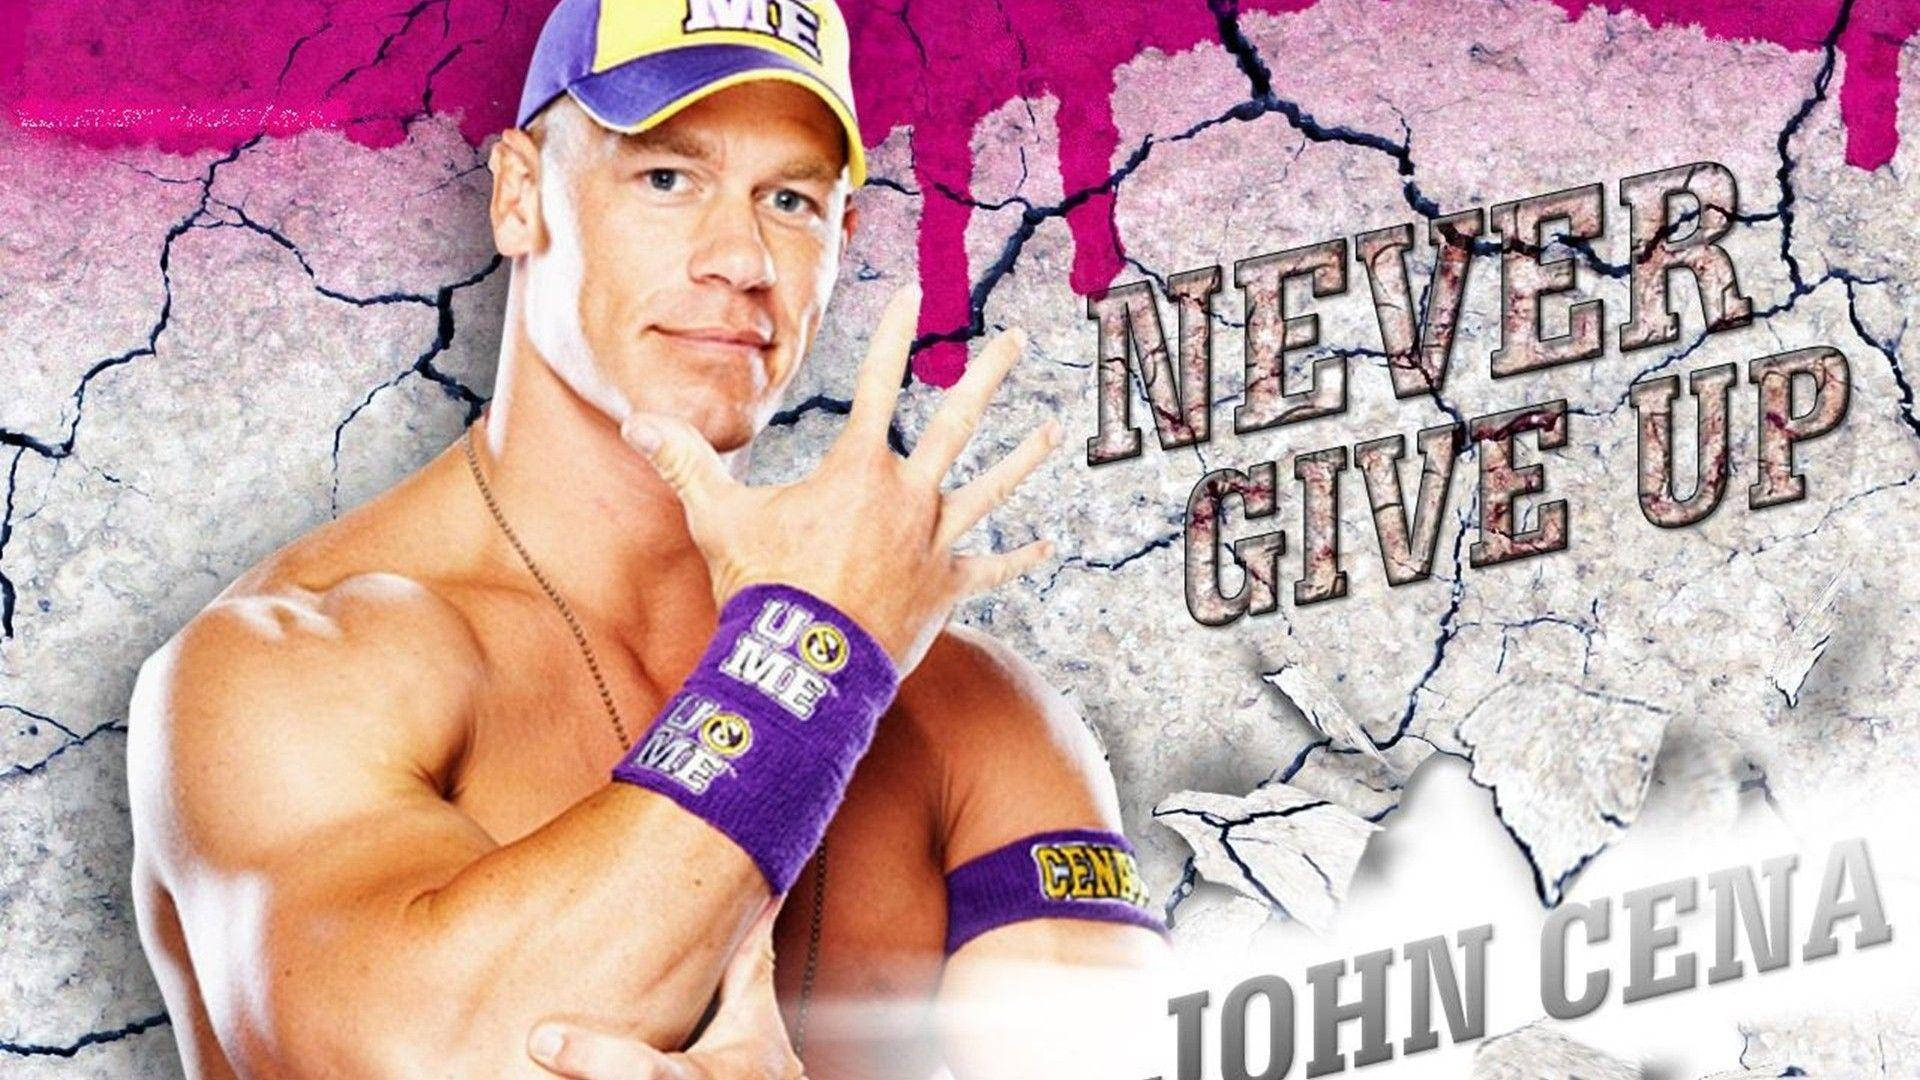 American Wrestler John Cena Digital Cover